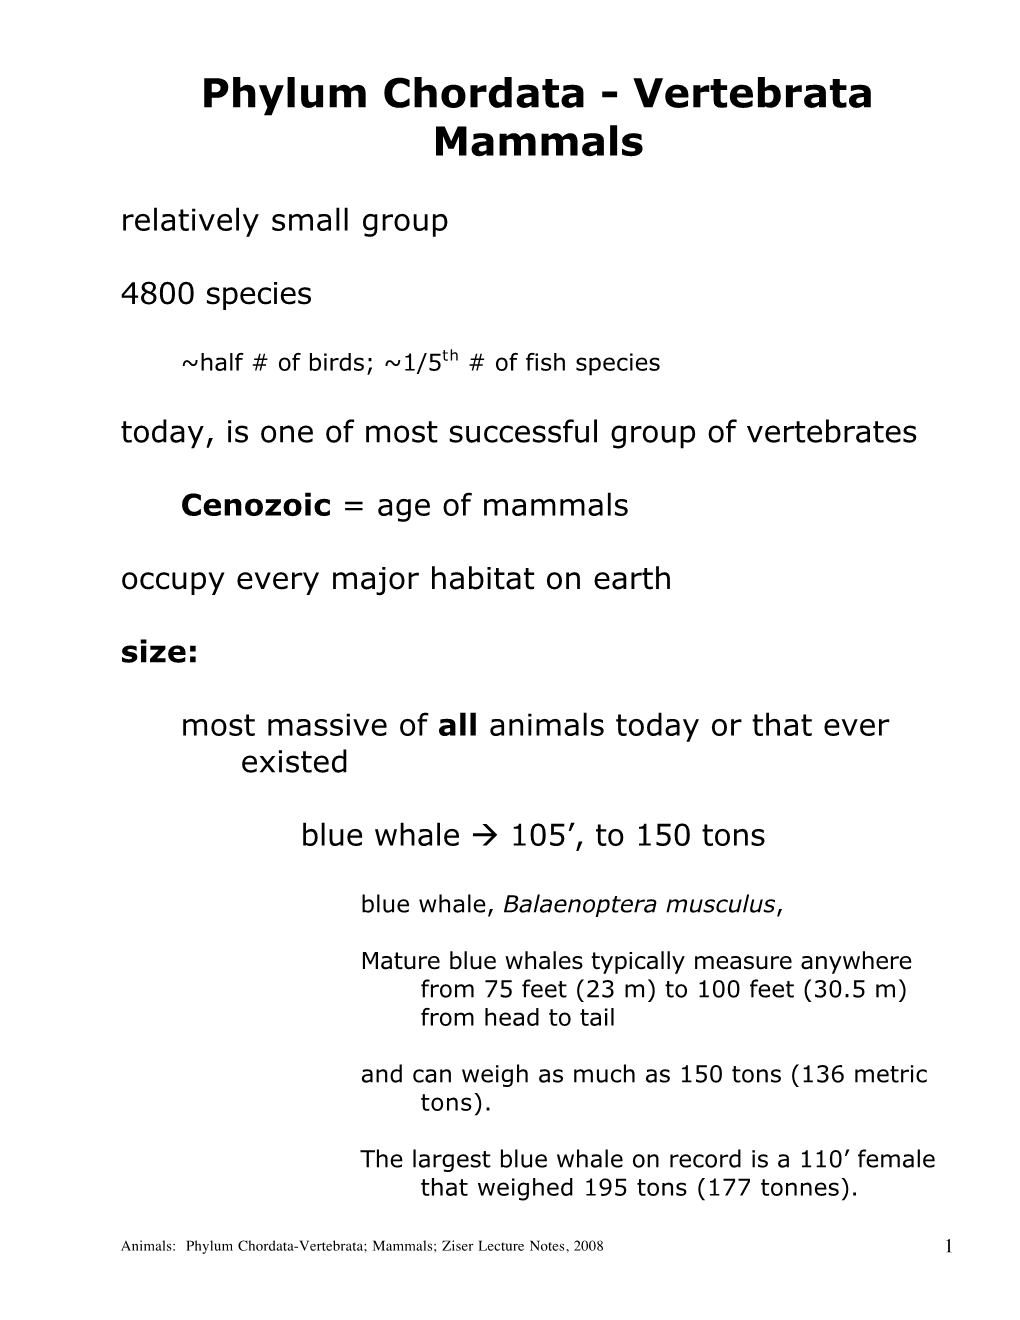 Phylum Chordata - Vertebrata Mammals Relatively Small Group